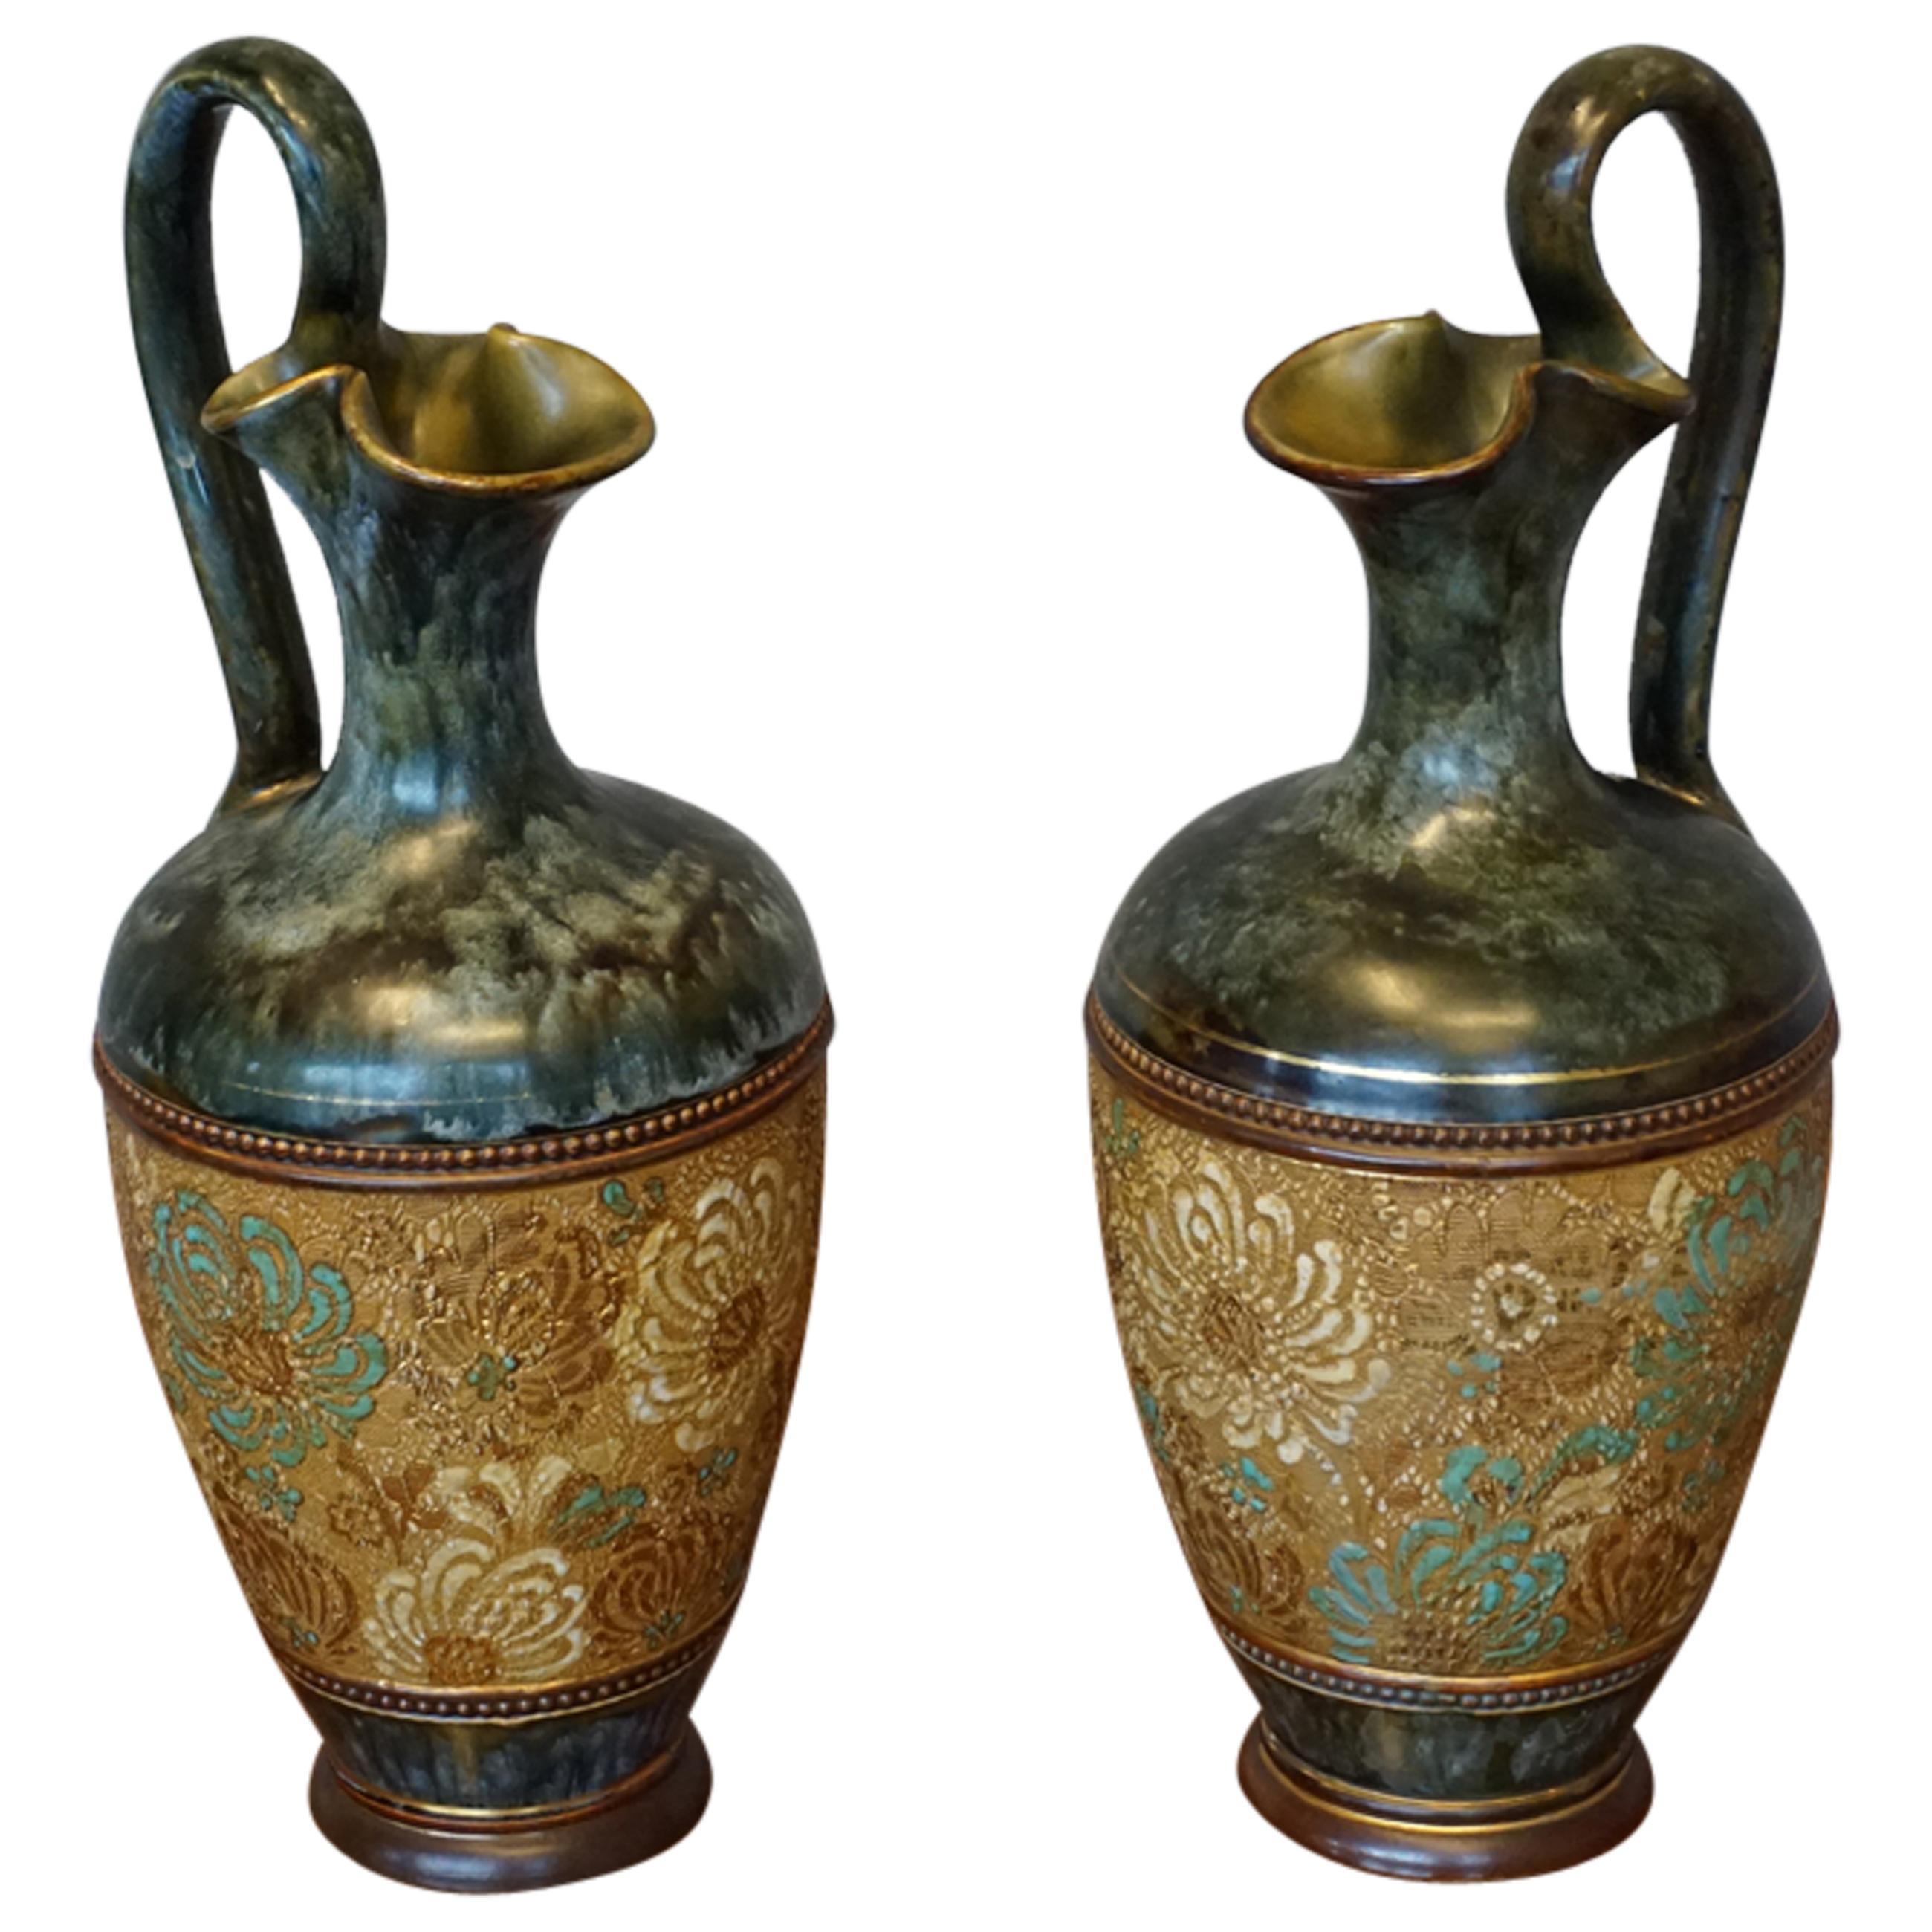 Rare Pair of Doulton Lambeth Vases with Striking Golden & Enameled Flower Decor